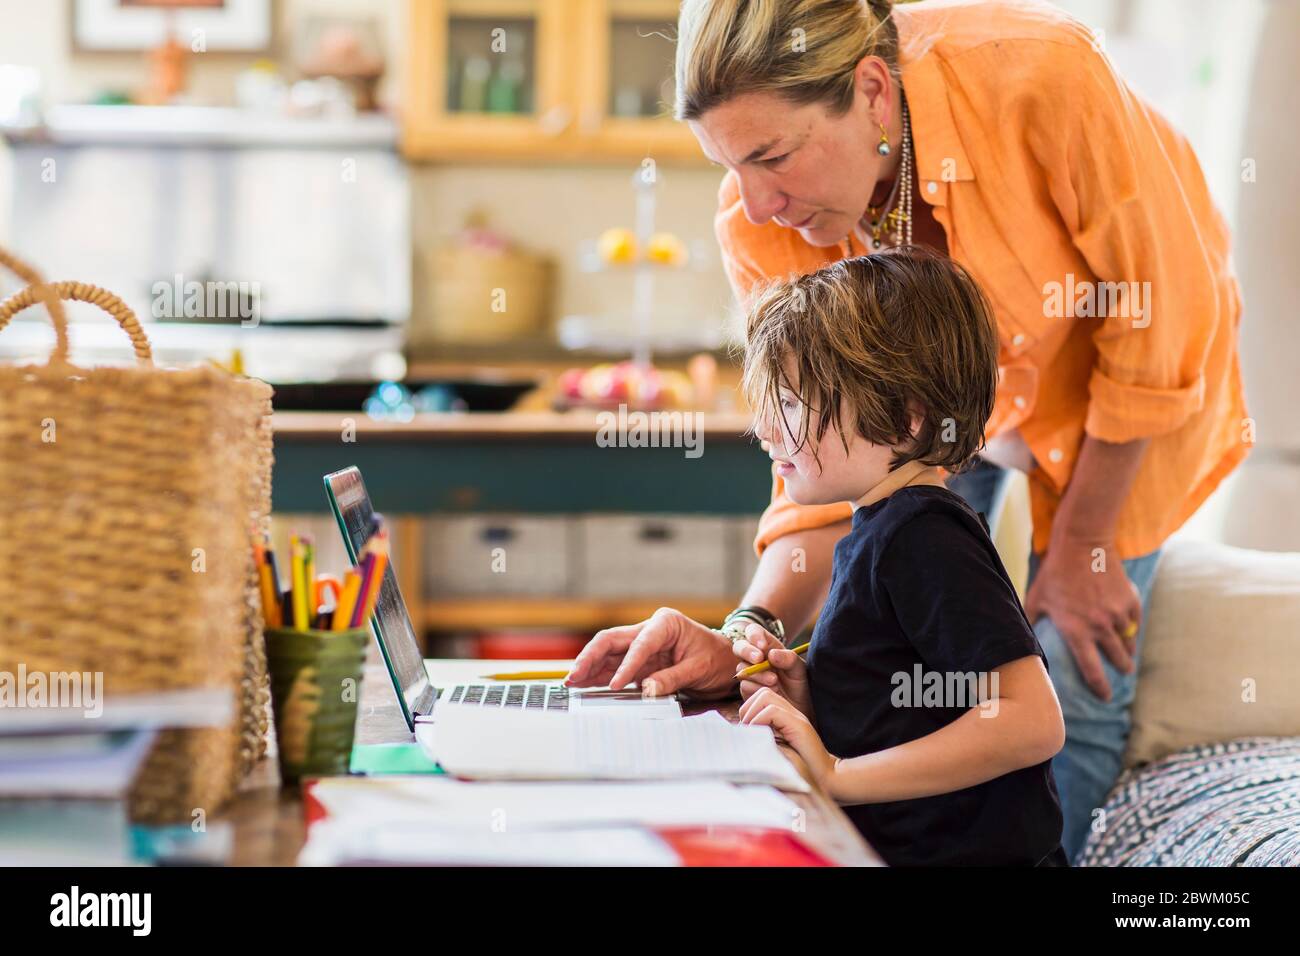 Femme adulte aidant son fils de six ans avec une session d'apprentissage à distance sur un ordinateur portable, à l'aide d'un pavé tactile. Banque D'Images